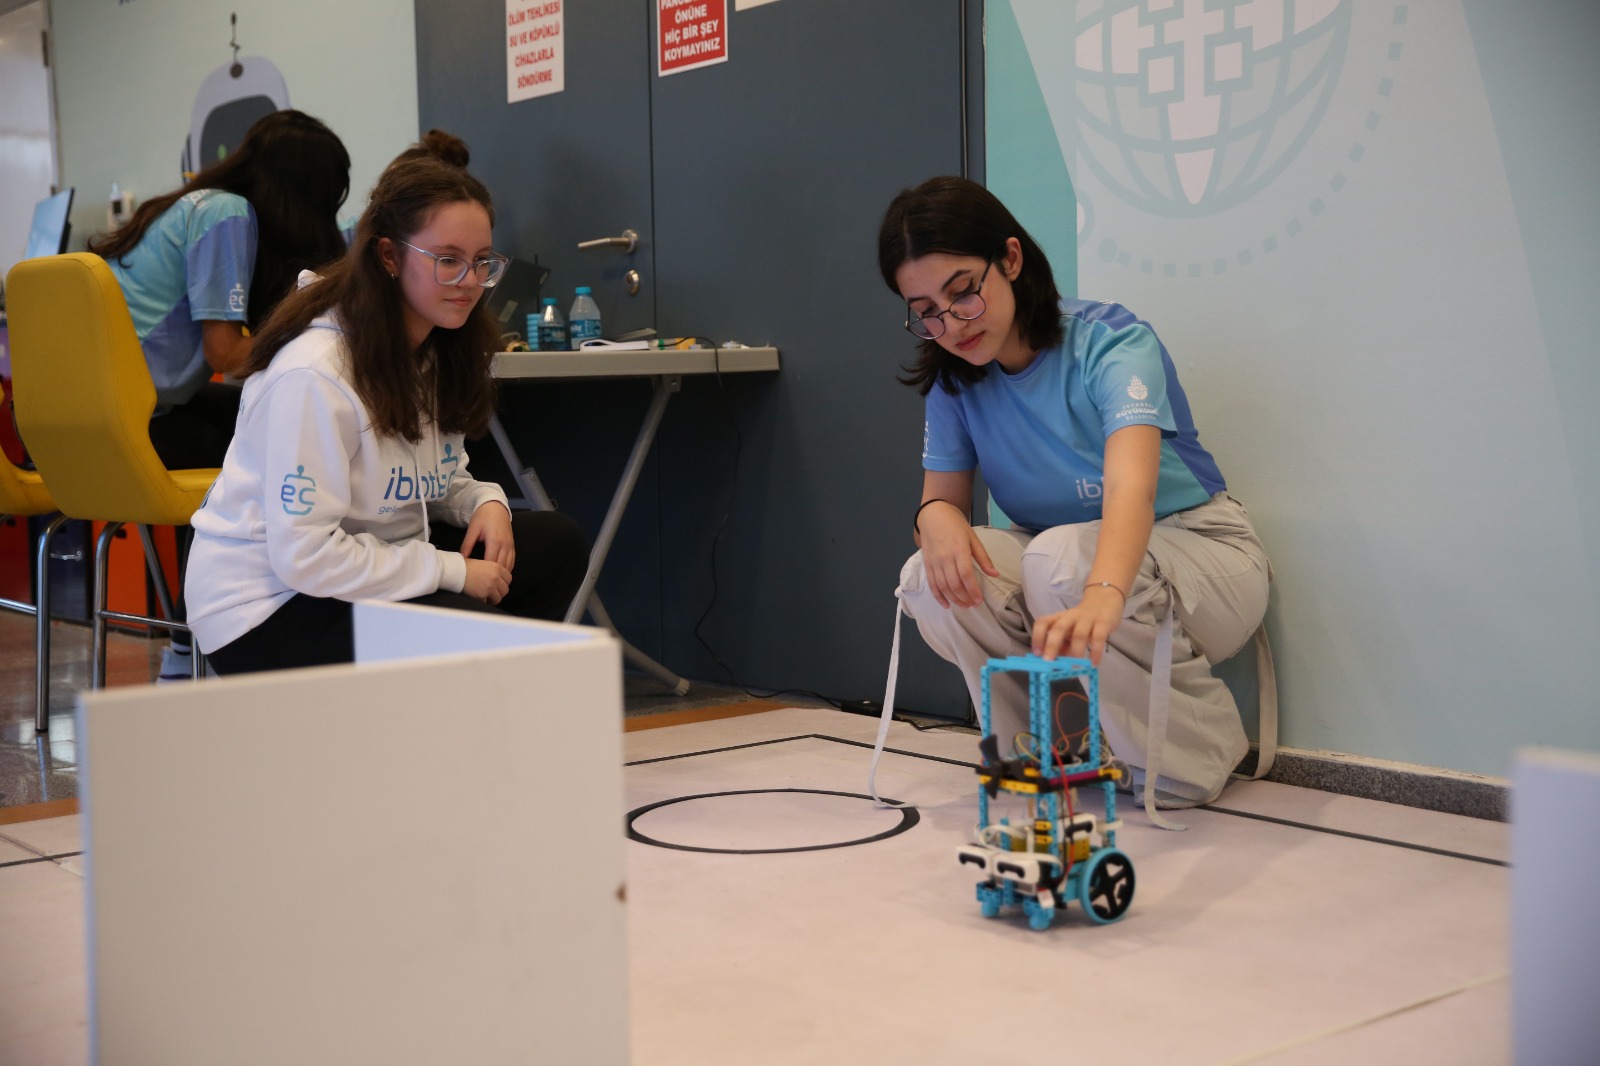 İBBTech Takımları uluslararası robot yarışlarına hazırlanıyor